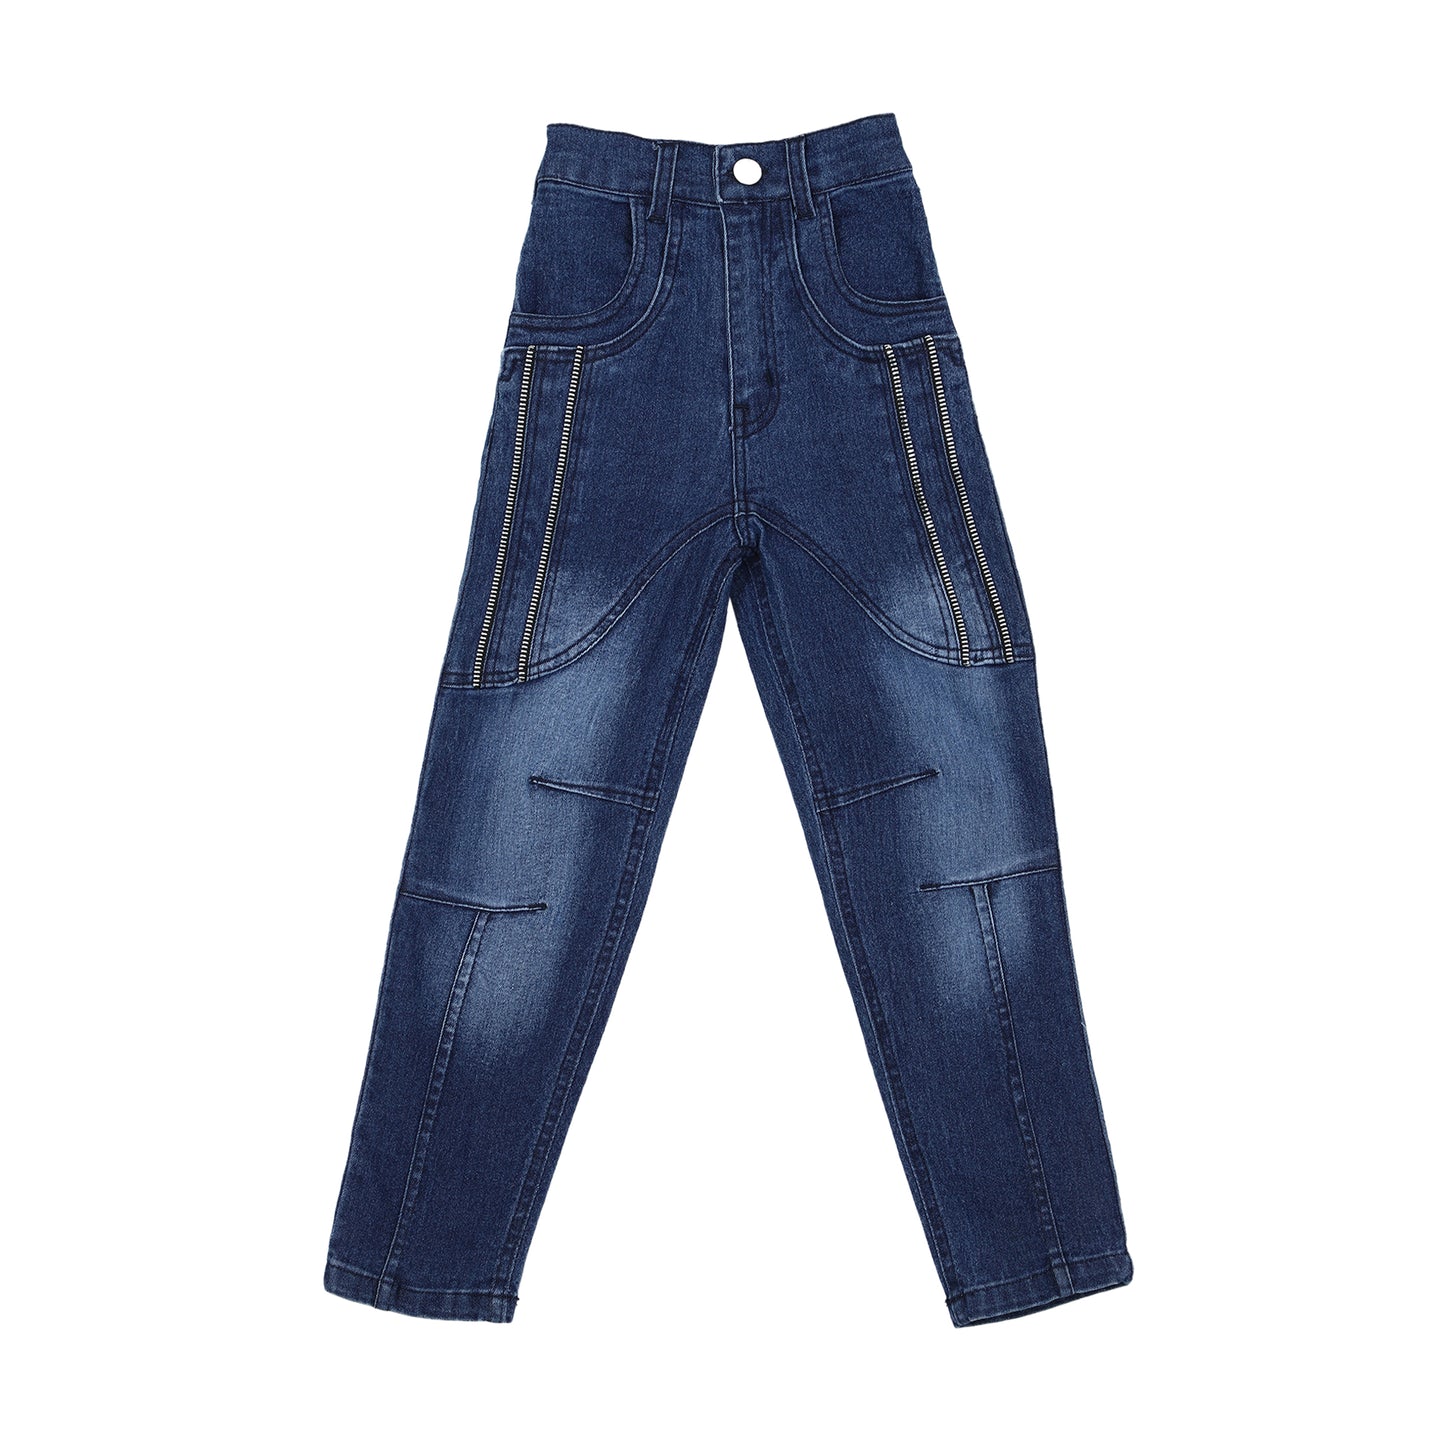 Denim Jeans for Boys - 2